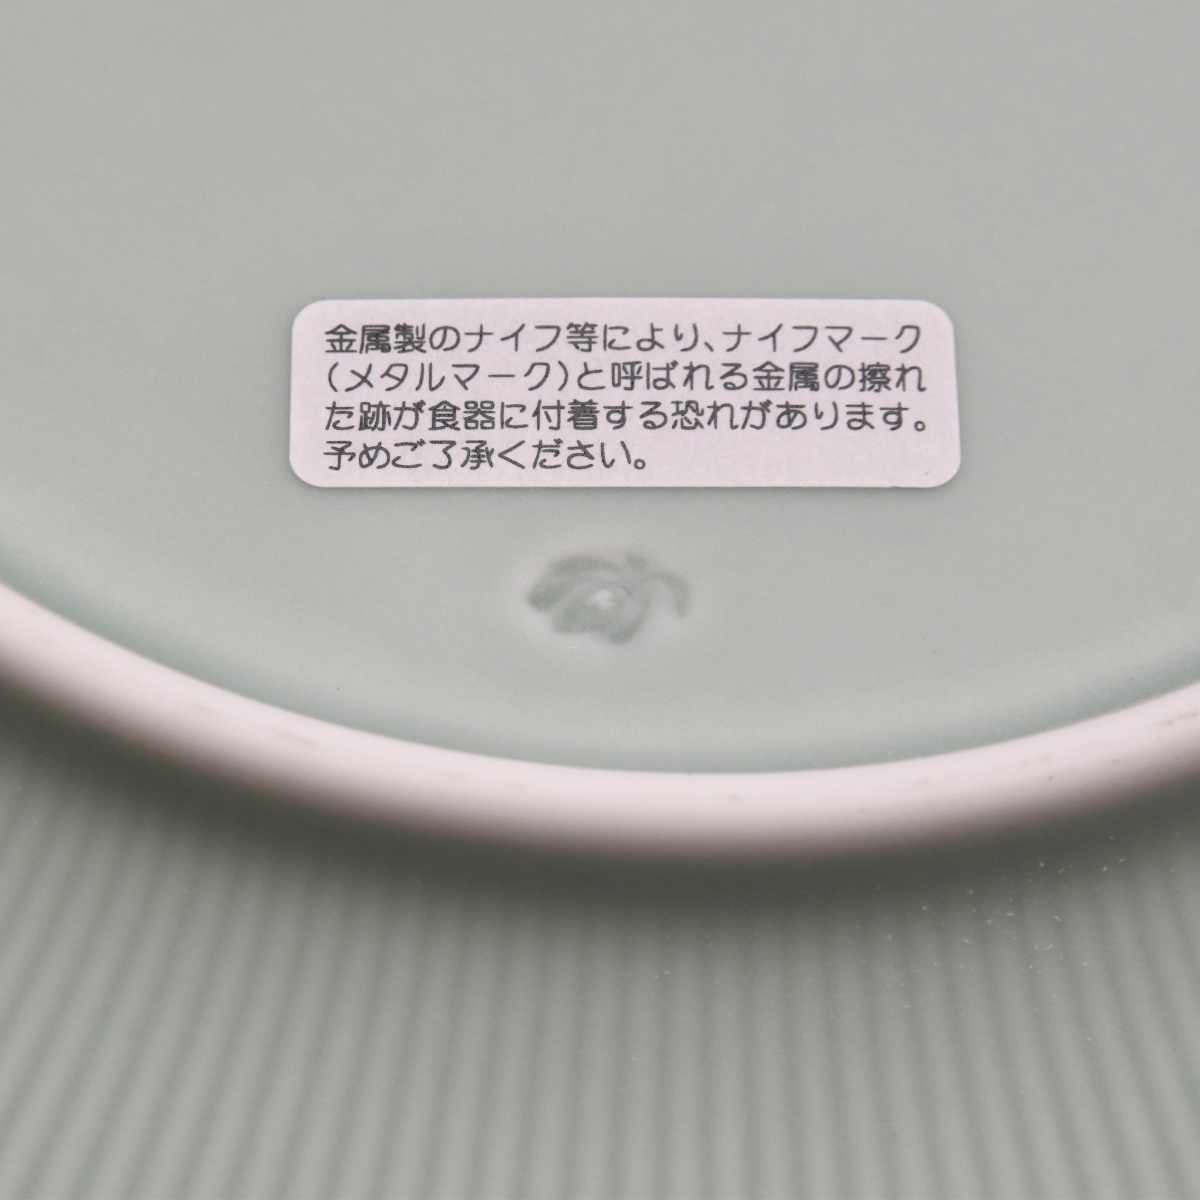 ピンストライプ・NX）大皿«大皿(25cm〜)|有田焼の老舗-香蘭社オンライン